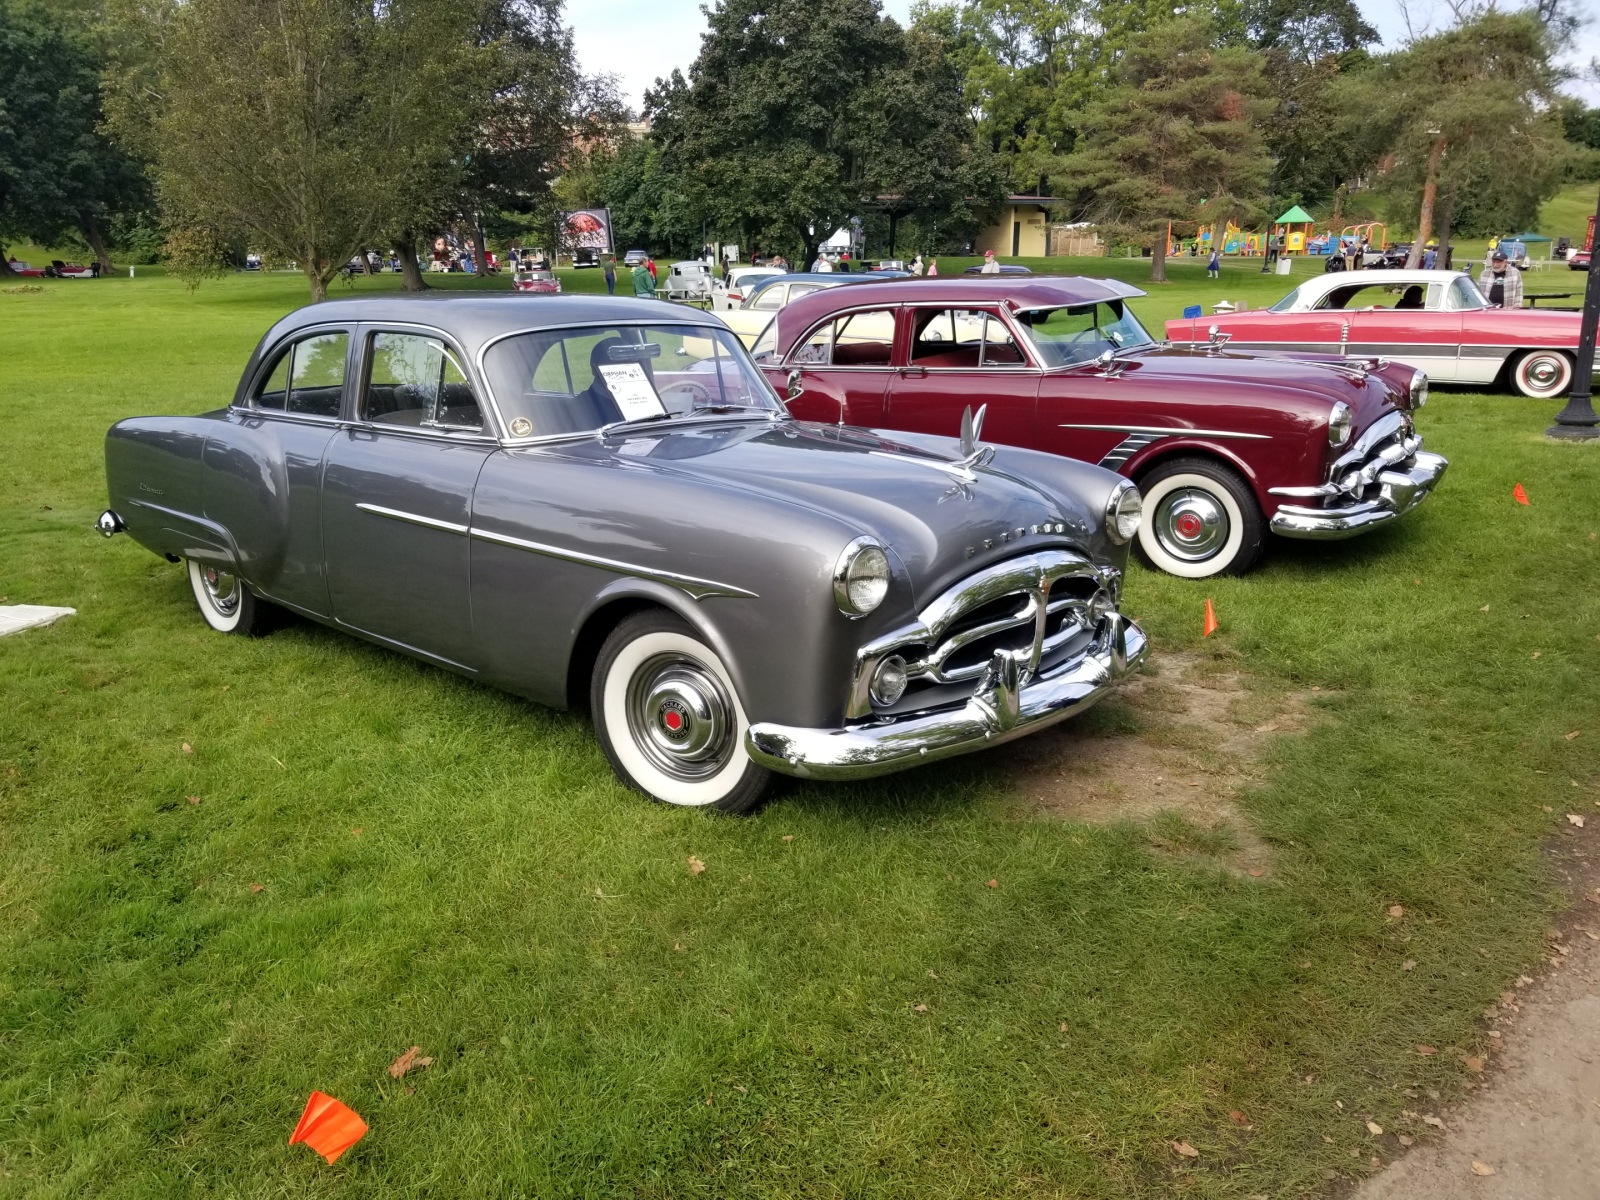 01-1951-Packard-200-4-Door-Sedan-Ronald-Gerber-Toledo-silver